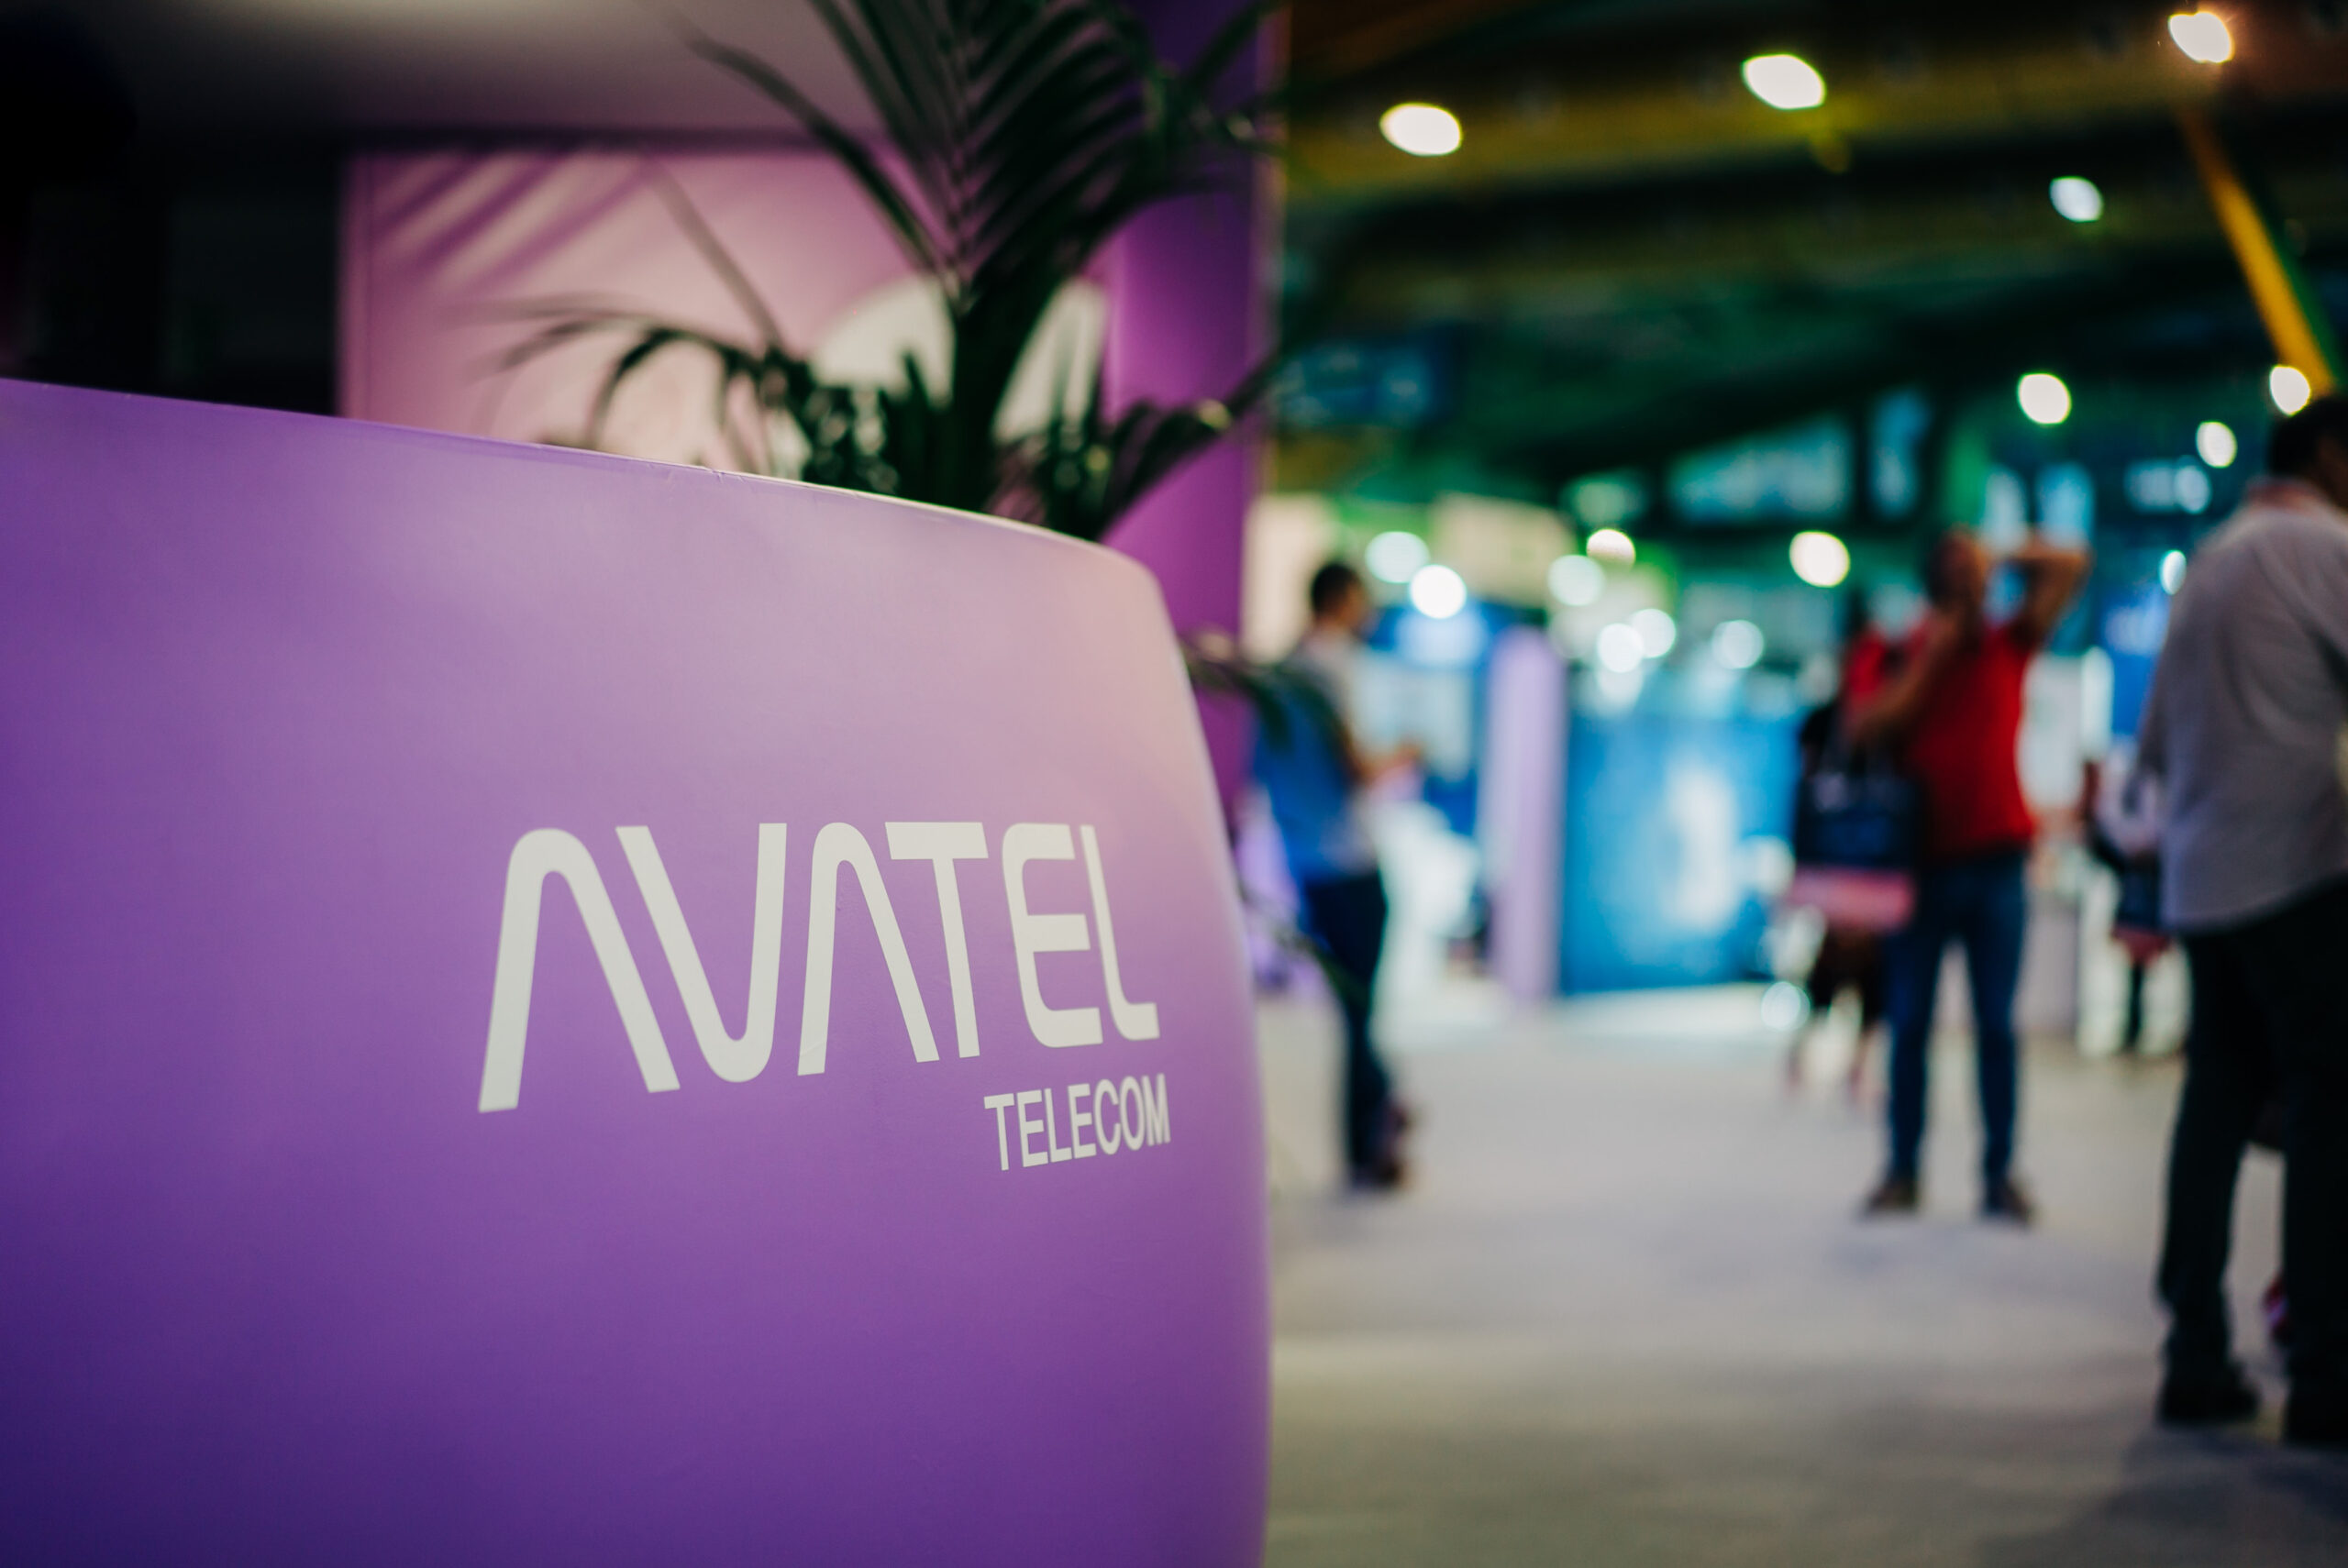 La operadora Avatel tiene dificultades para reunir los 1.000 millones de la compra de Lyntia